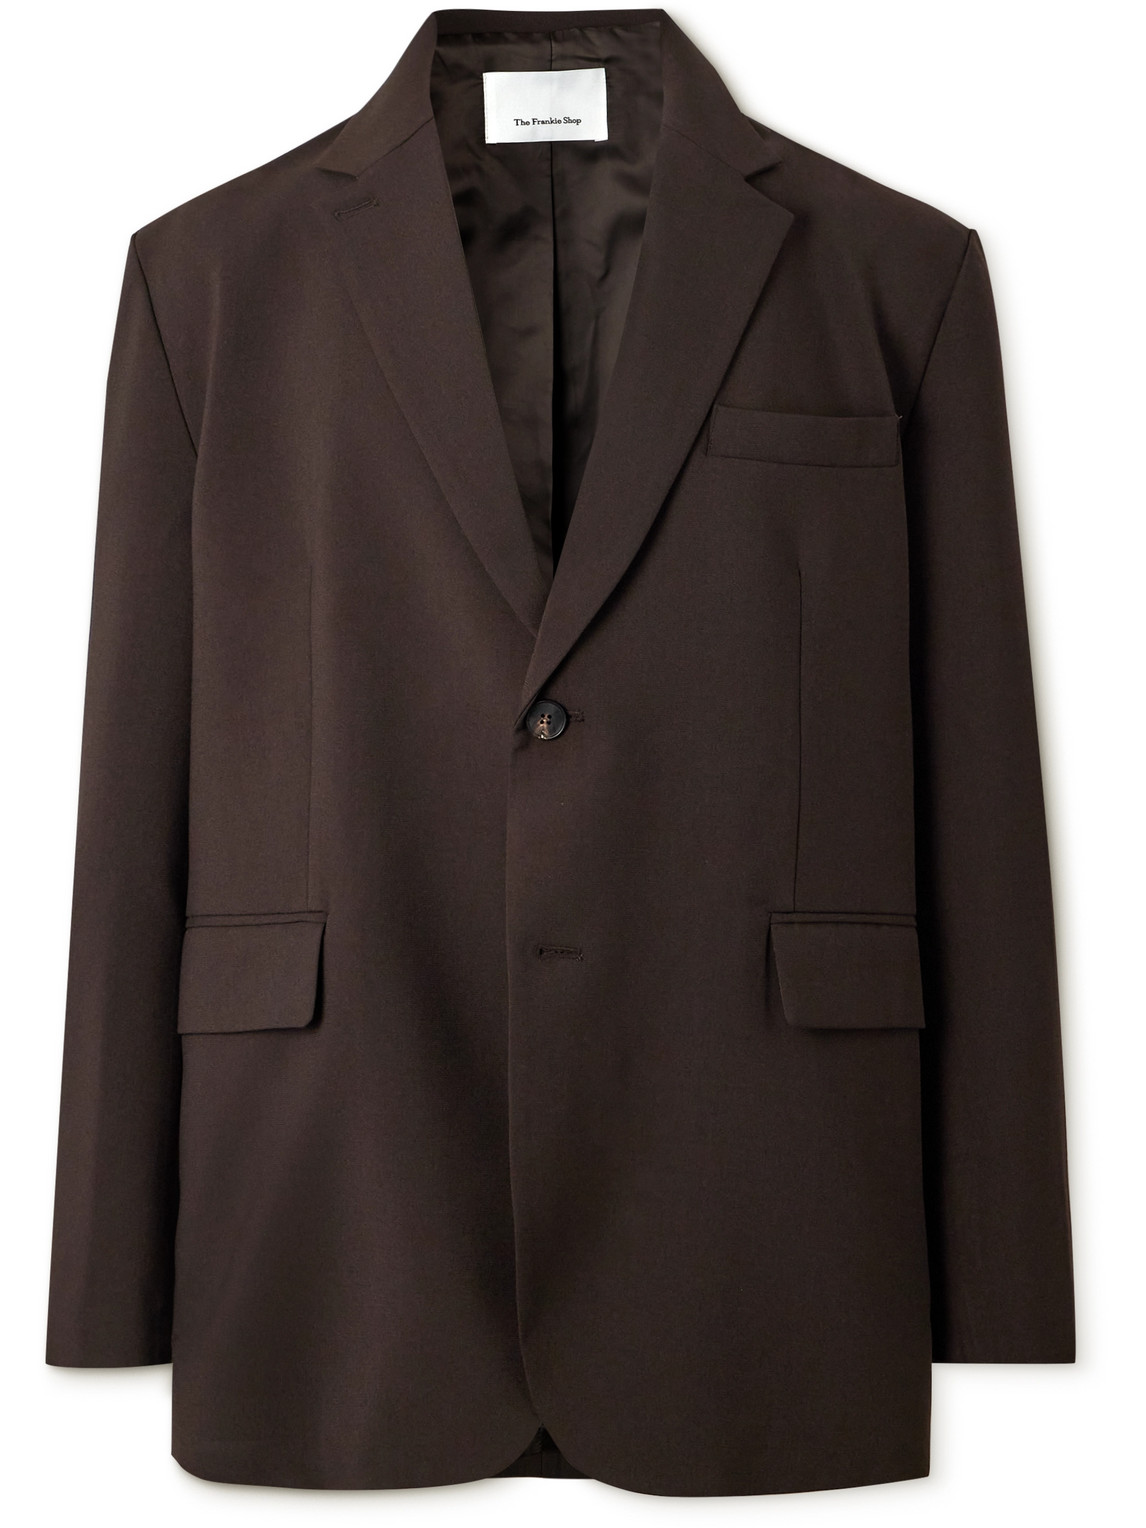 The Frankie Shop - Beo Oversized Woven Suit Jacket - Men - Brown - S von The Frankie Shop